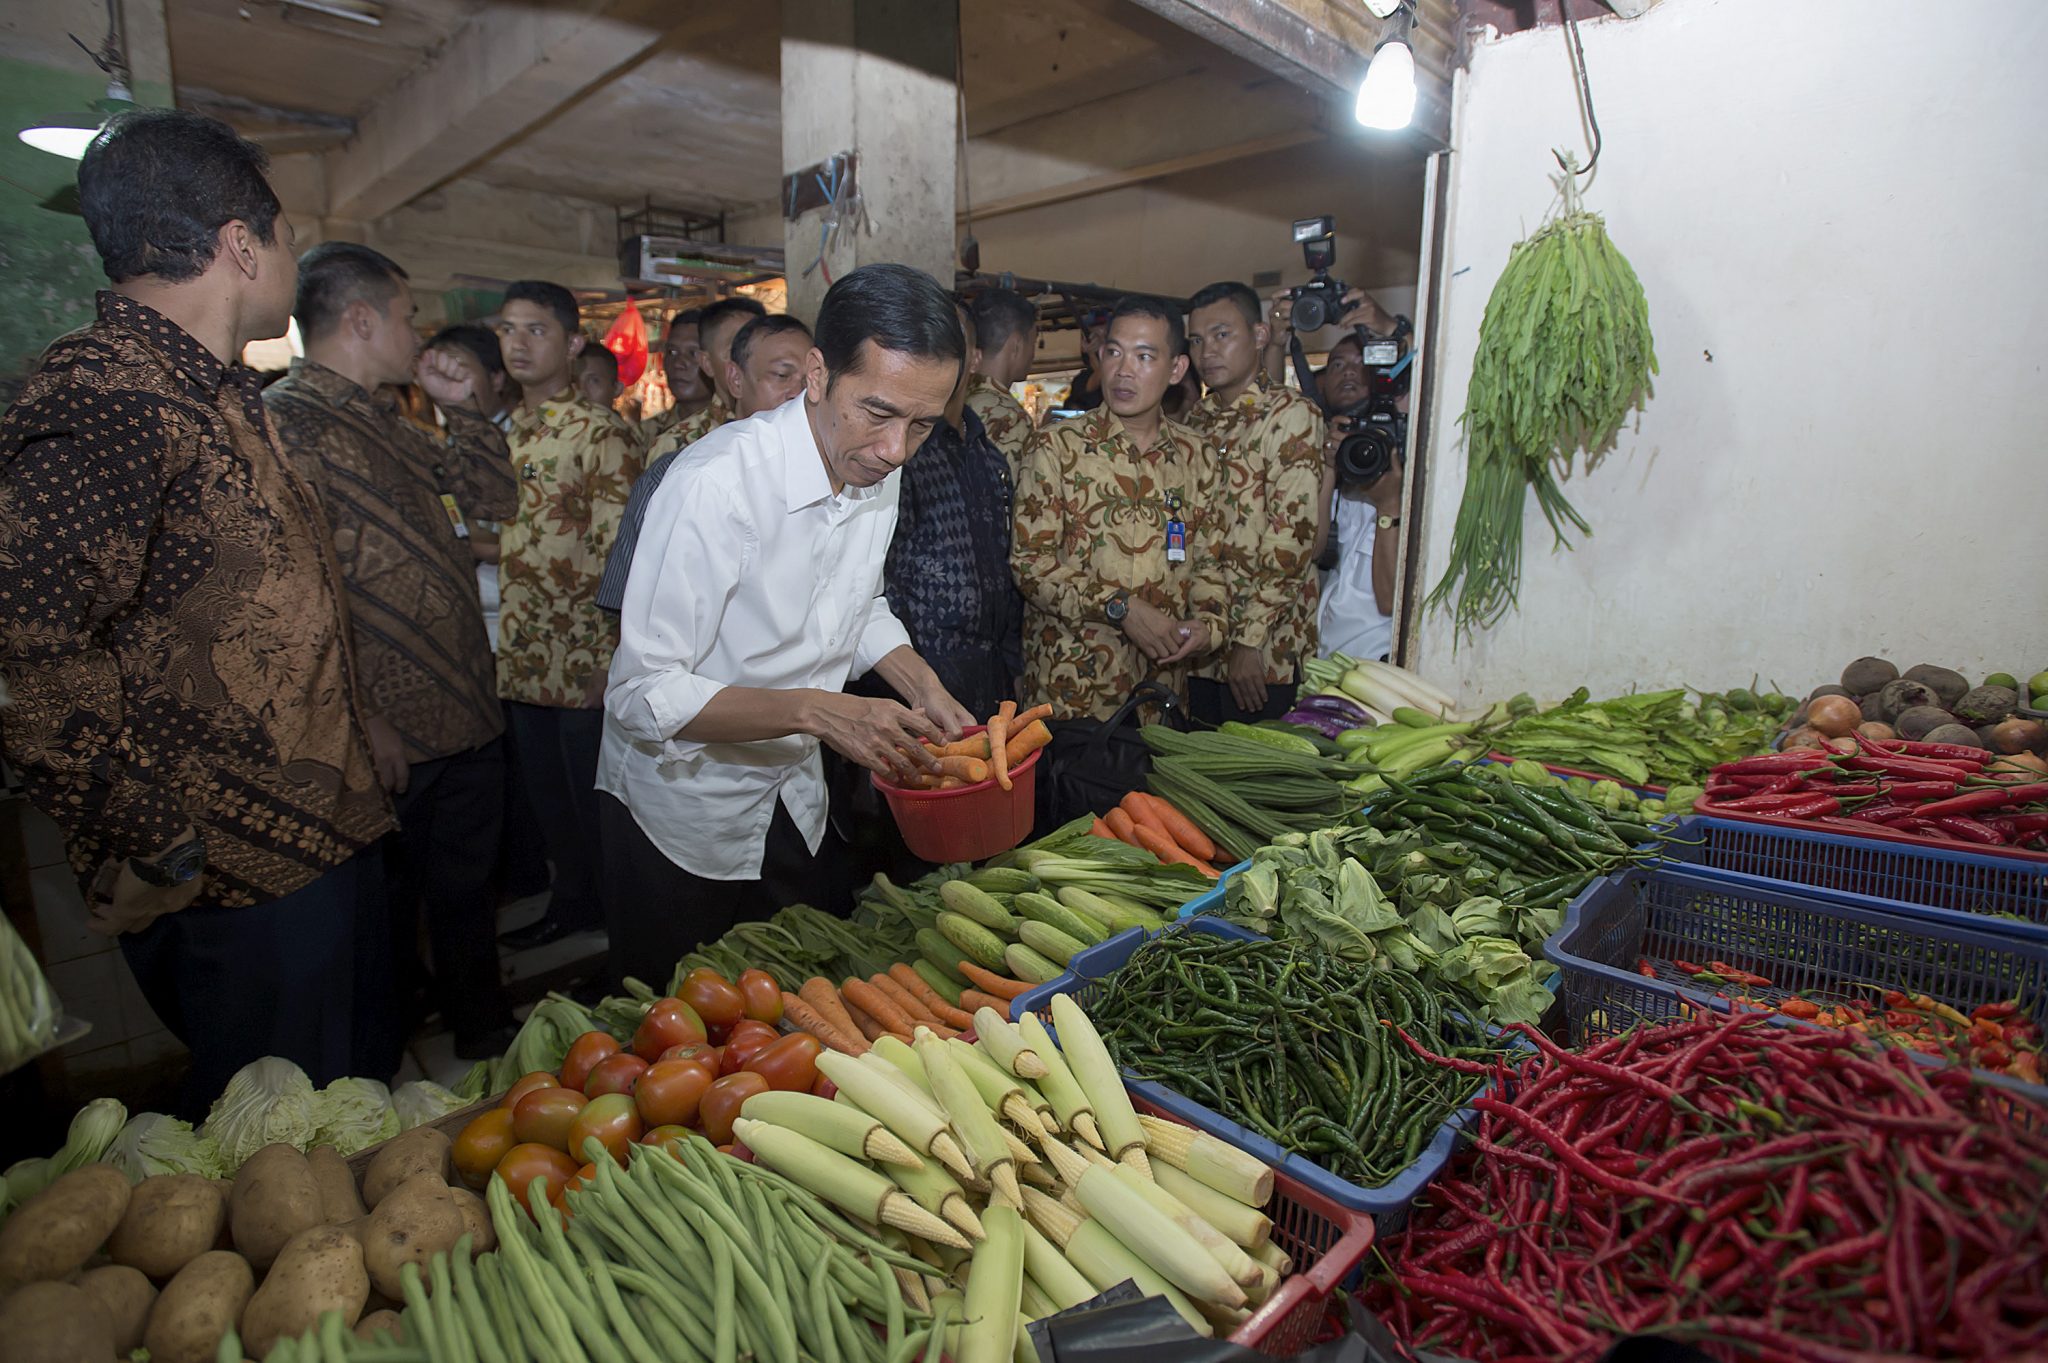 Menangani krisis pangan global adalah tugas besar lainnya untuk KTT G20 di Indonesia